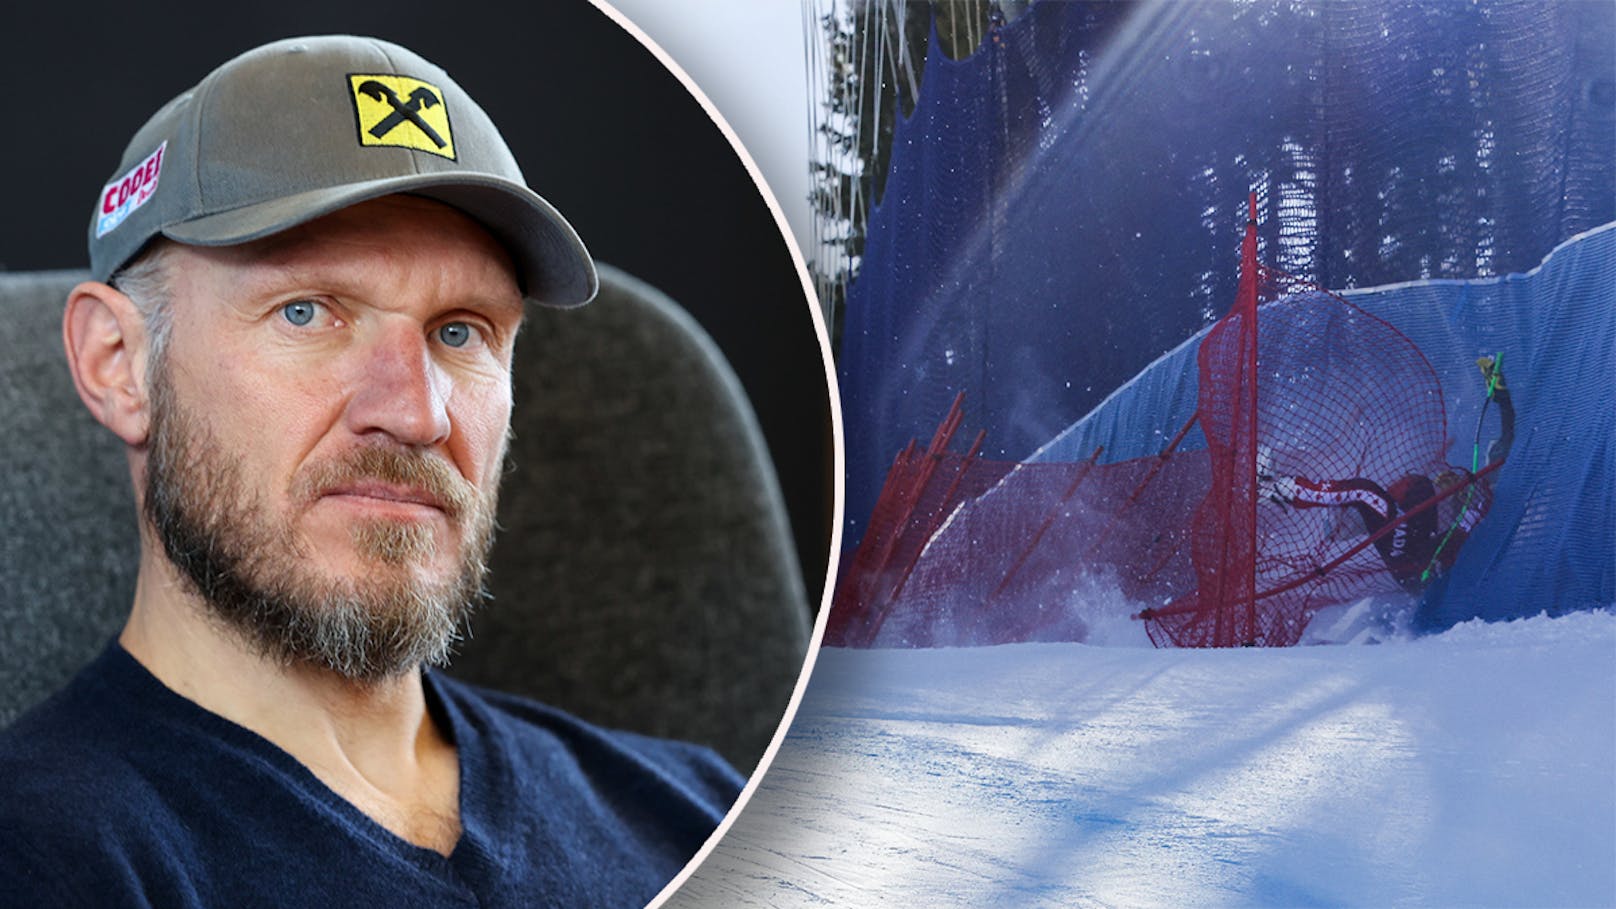 Dramatischer Sturz von Ski-Star: "Wie Hermann Maier"